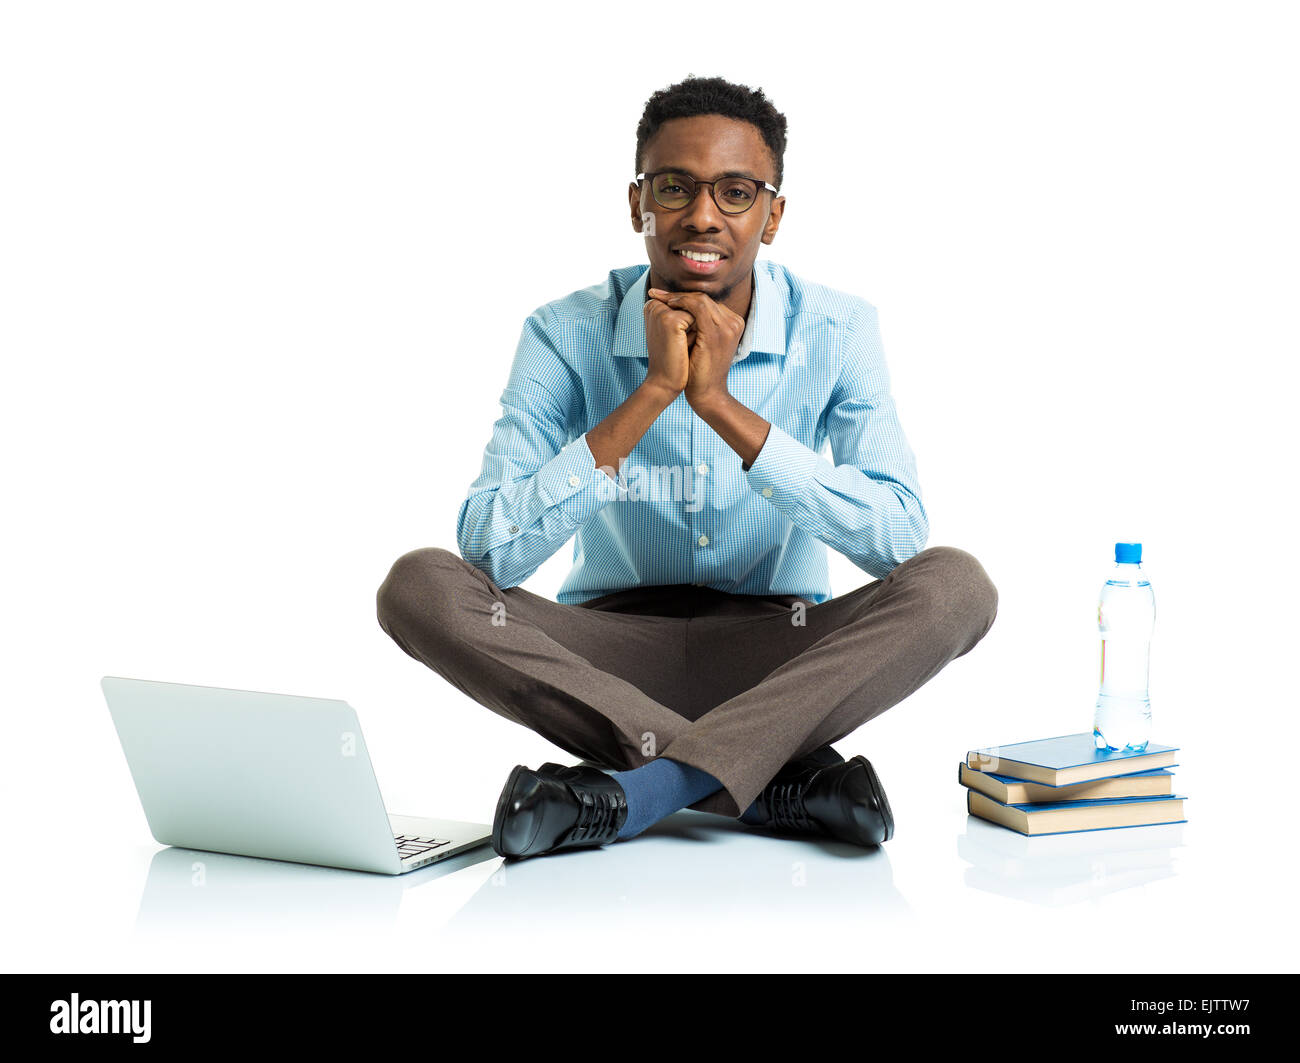 Felice americano africano studente di college con il computer portatile, libri e una bottiglia di acqua seduto su sfondo bianco Foto Stock